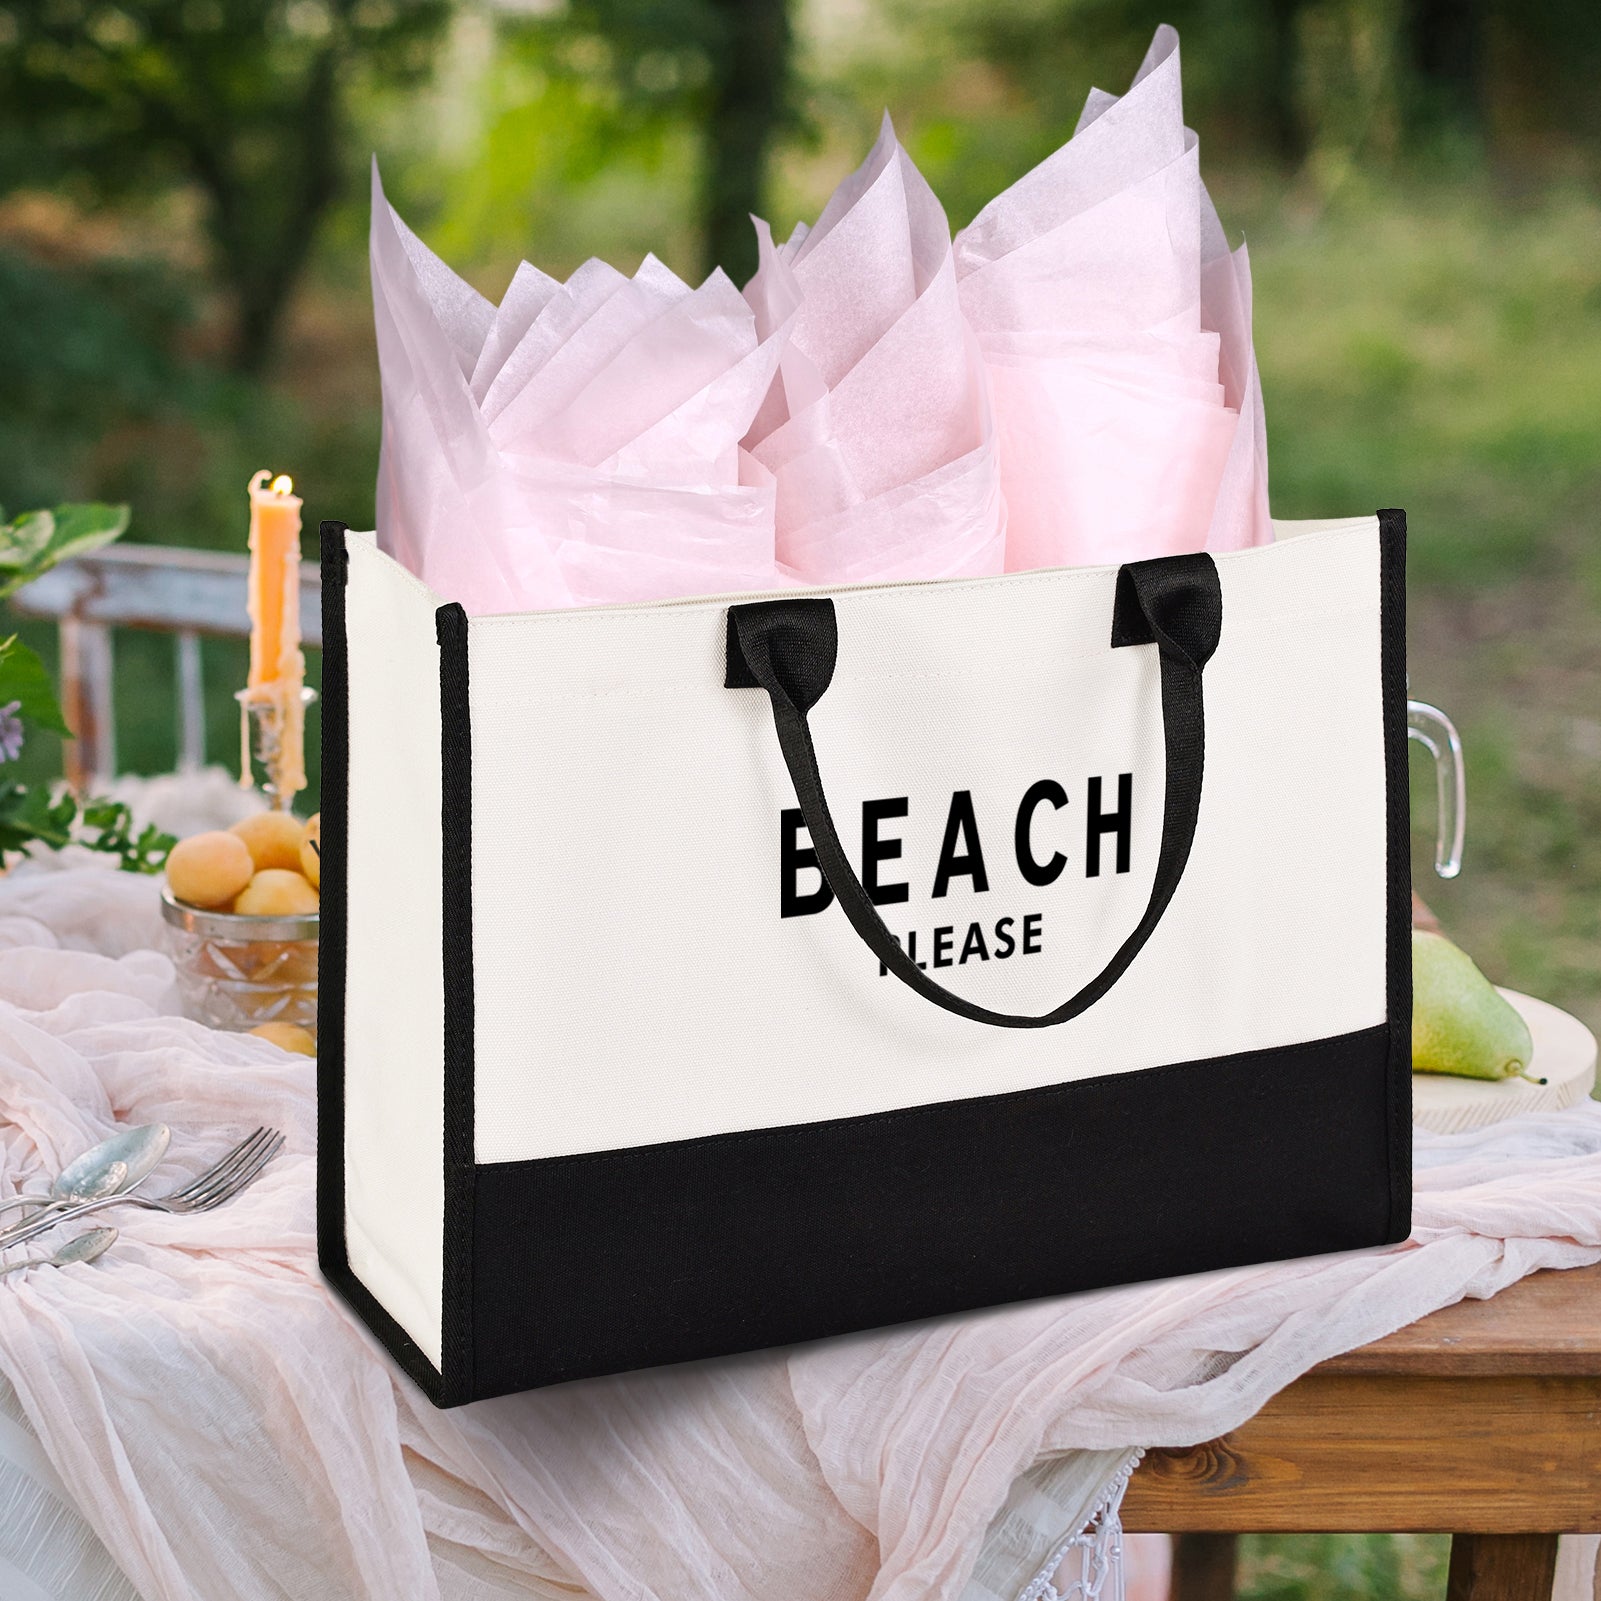 Beach Please Designer Beach Bag